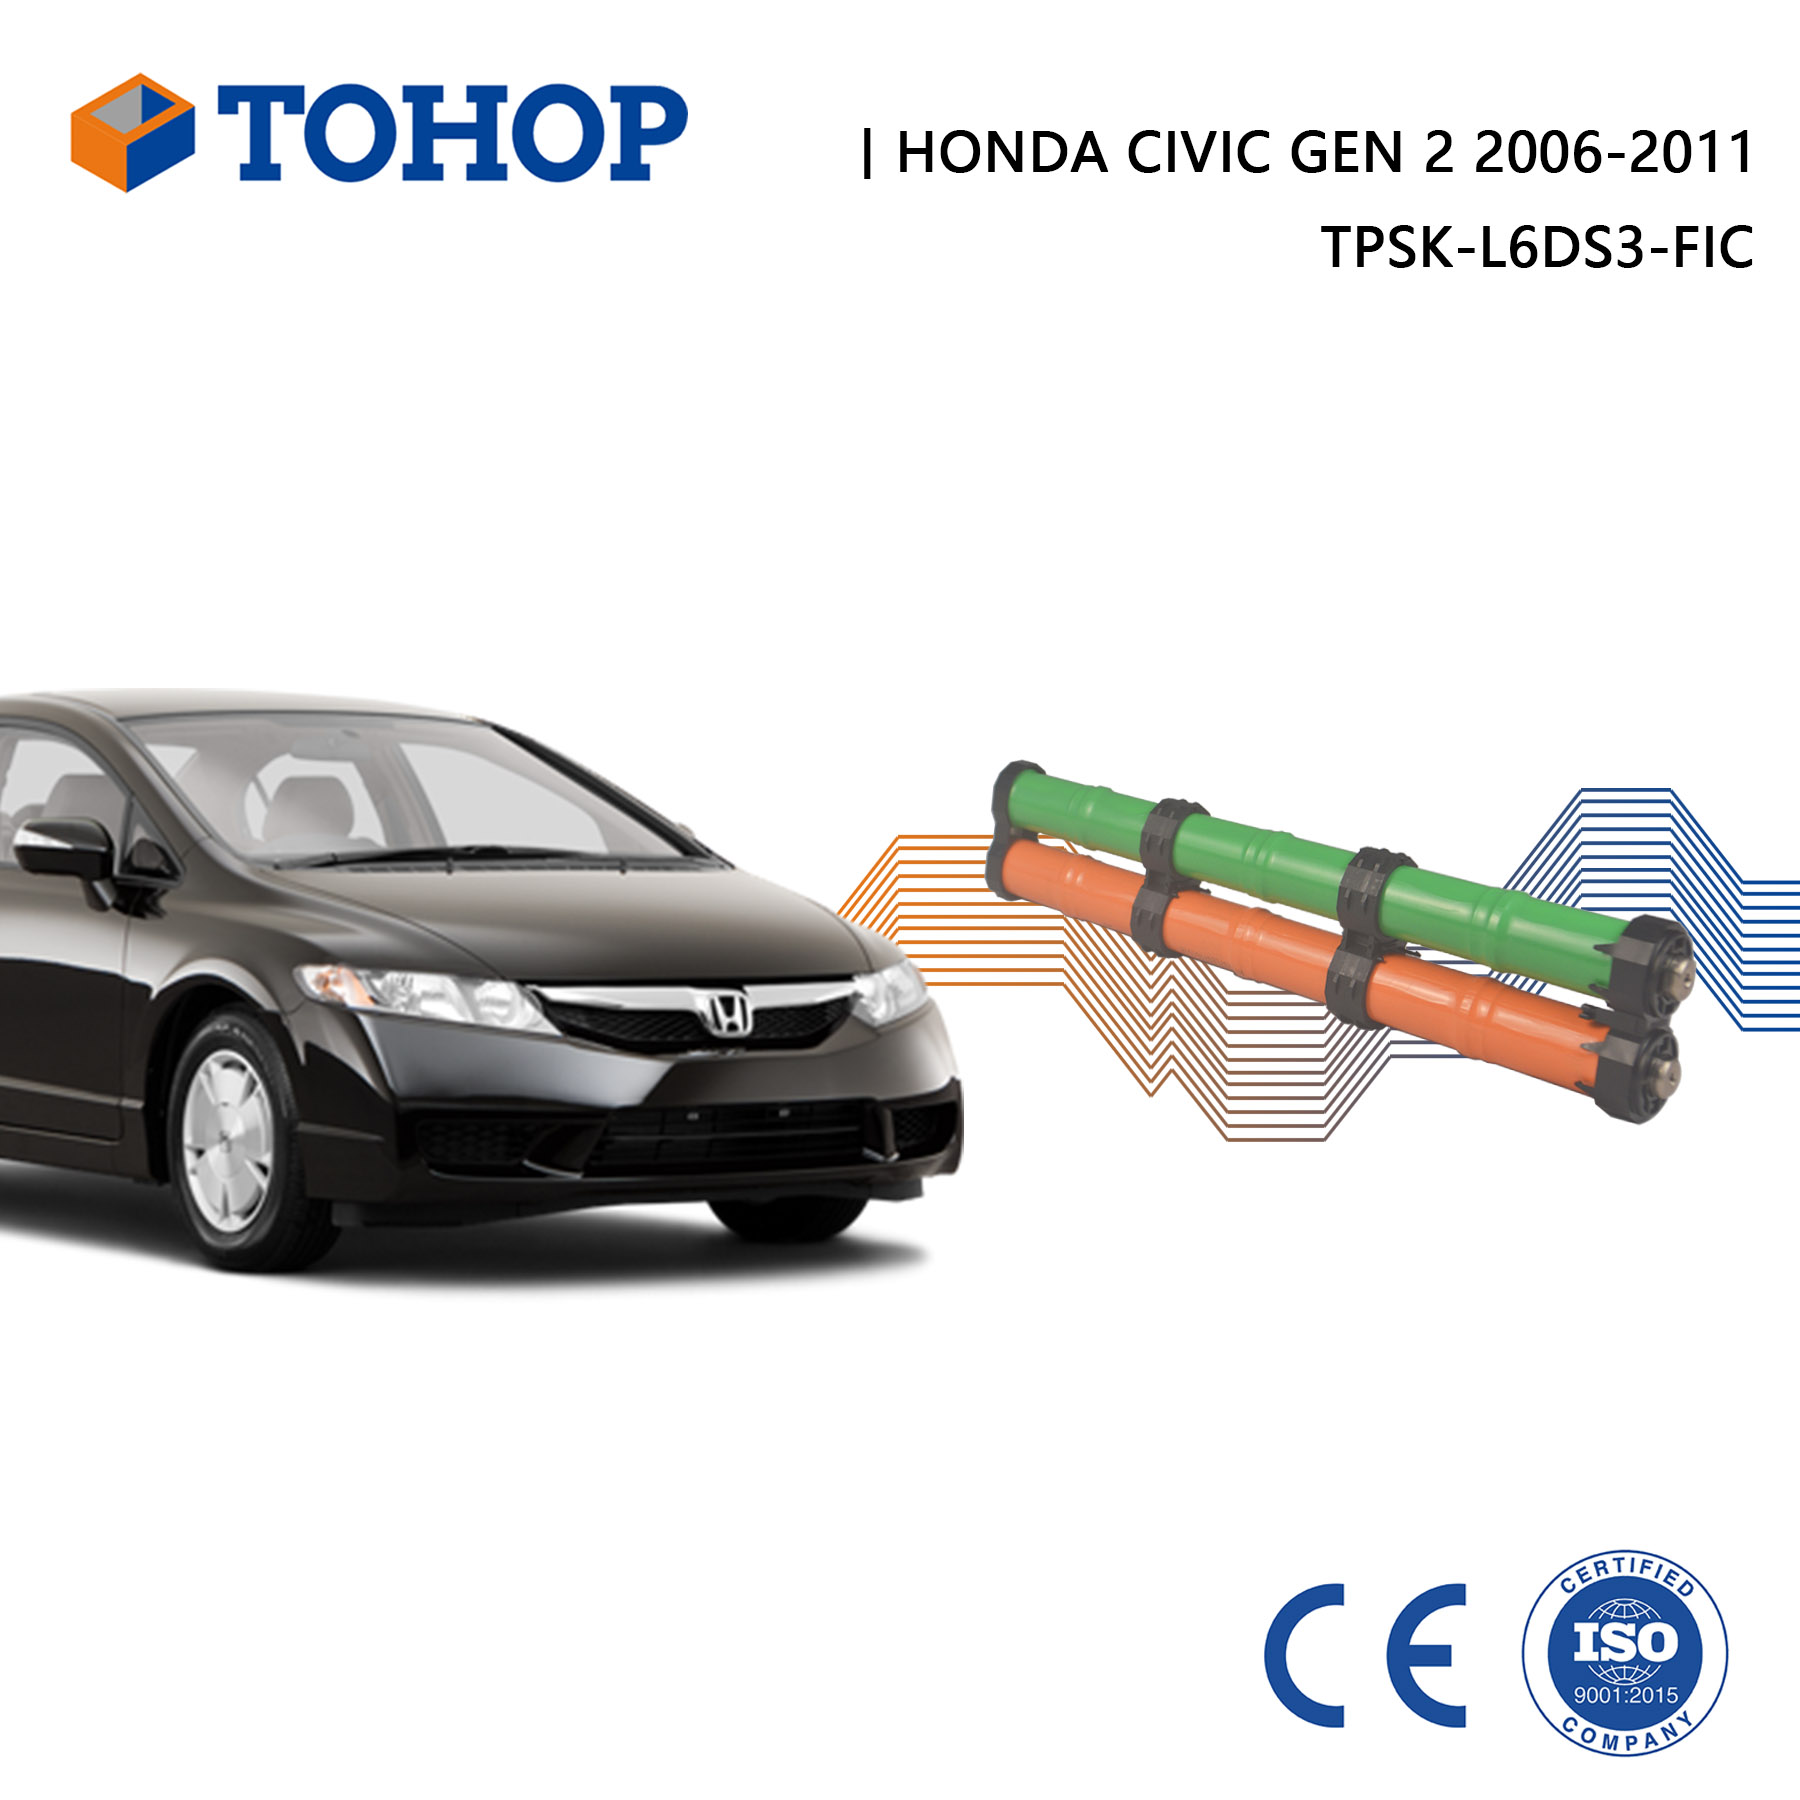 Nouvelles cellules de remplacement de batterie hybride Honda Civic Gen 2 14.4V 6.5Ah